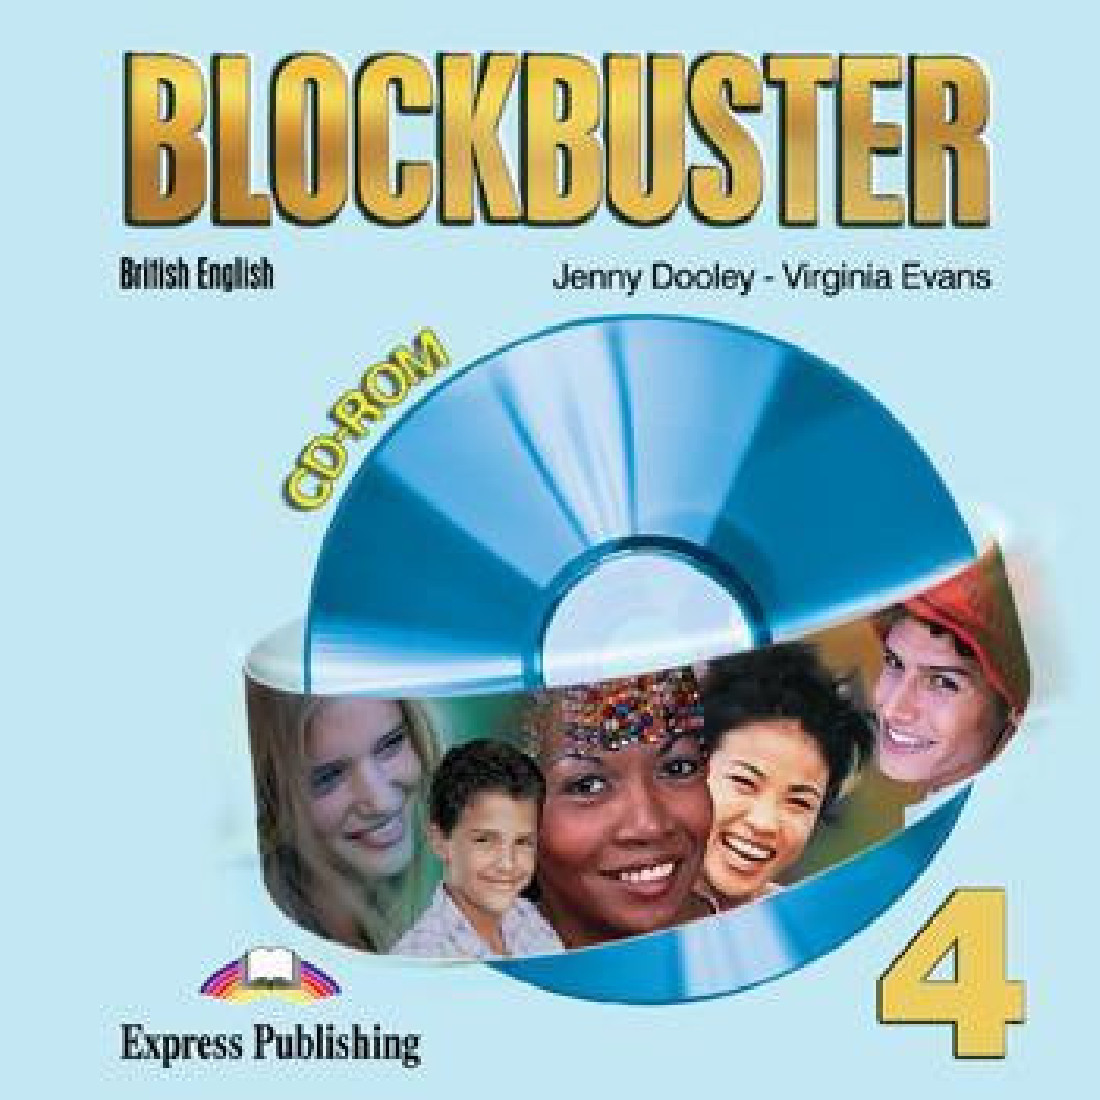 BLOCKBUSTER 4 CD-ROM (BRITISH ENGLISH)